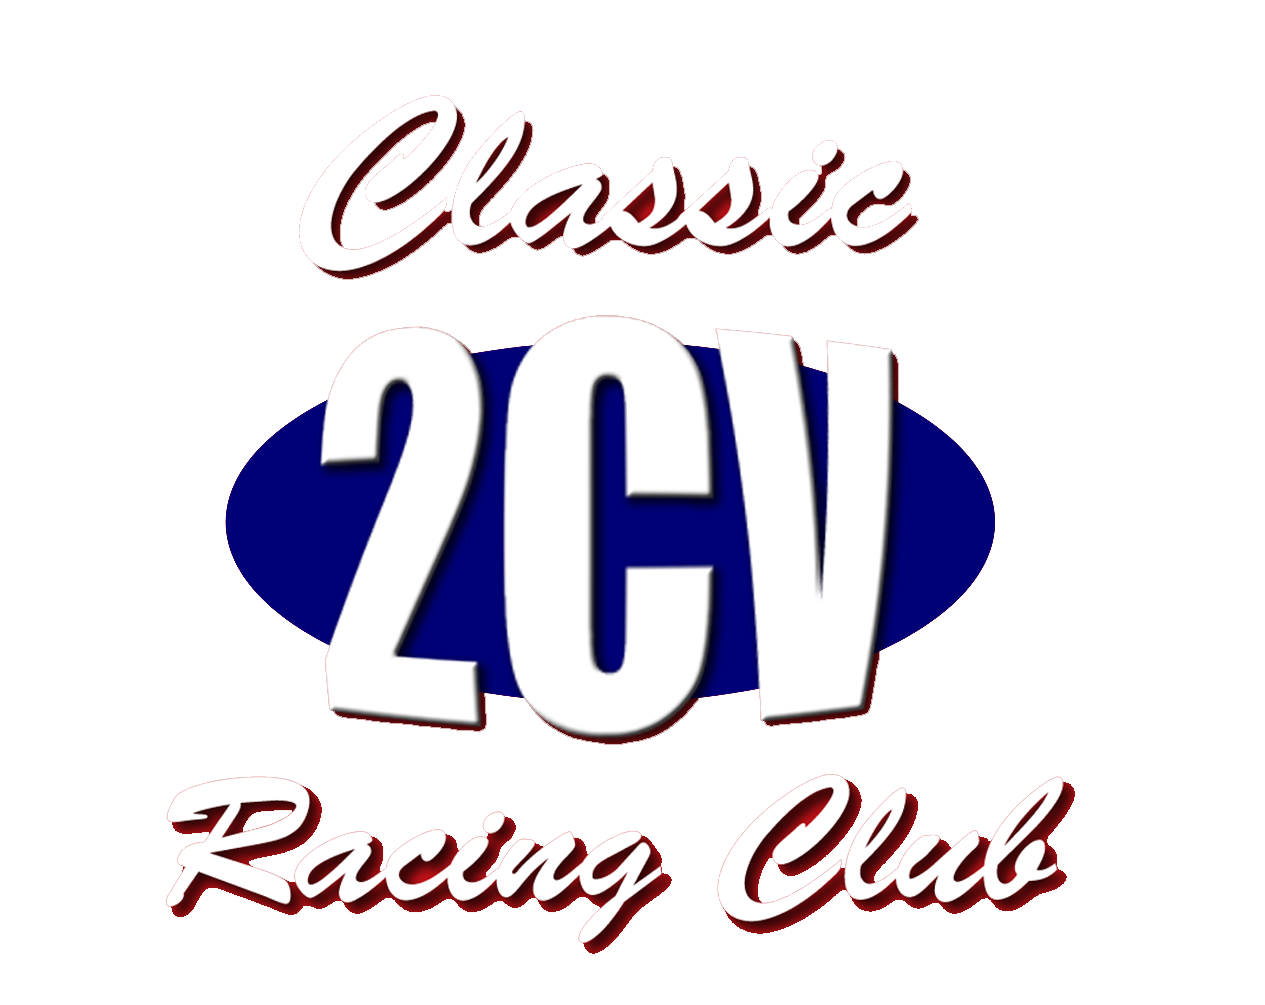 2CV Racing Club